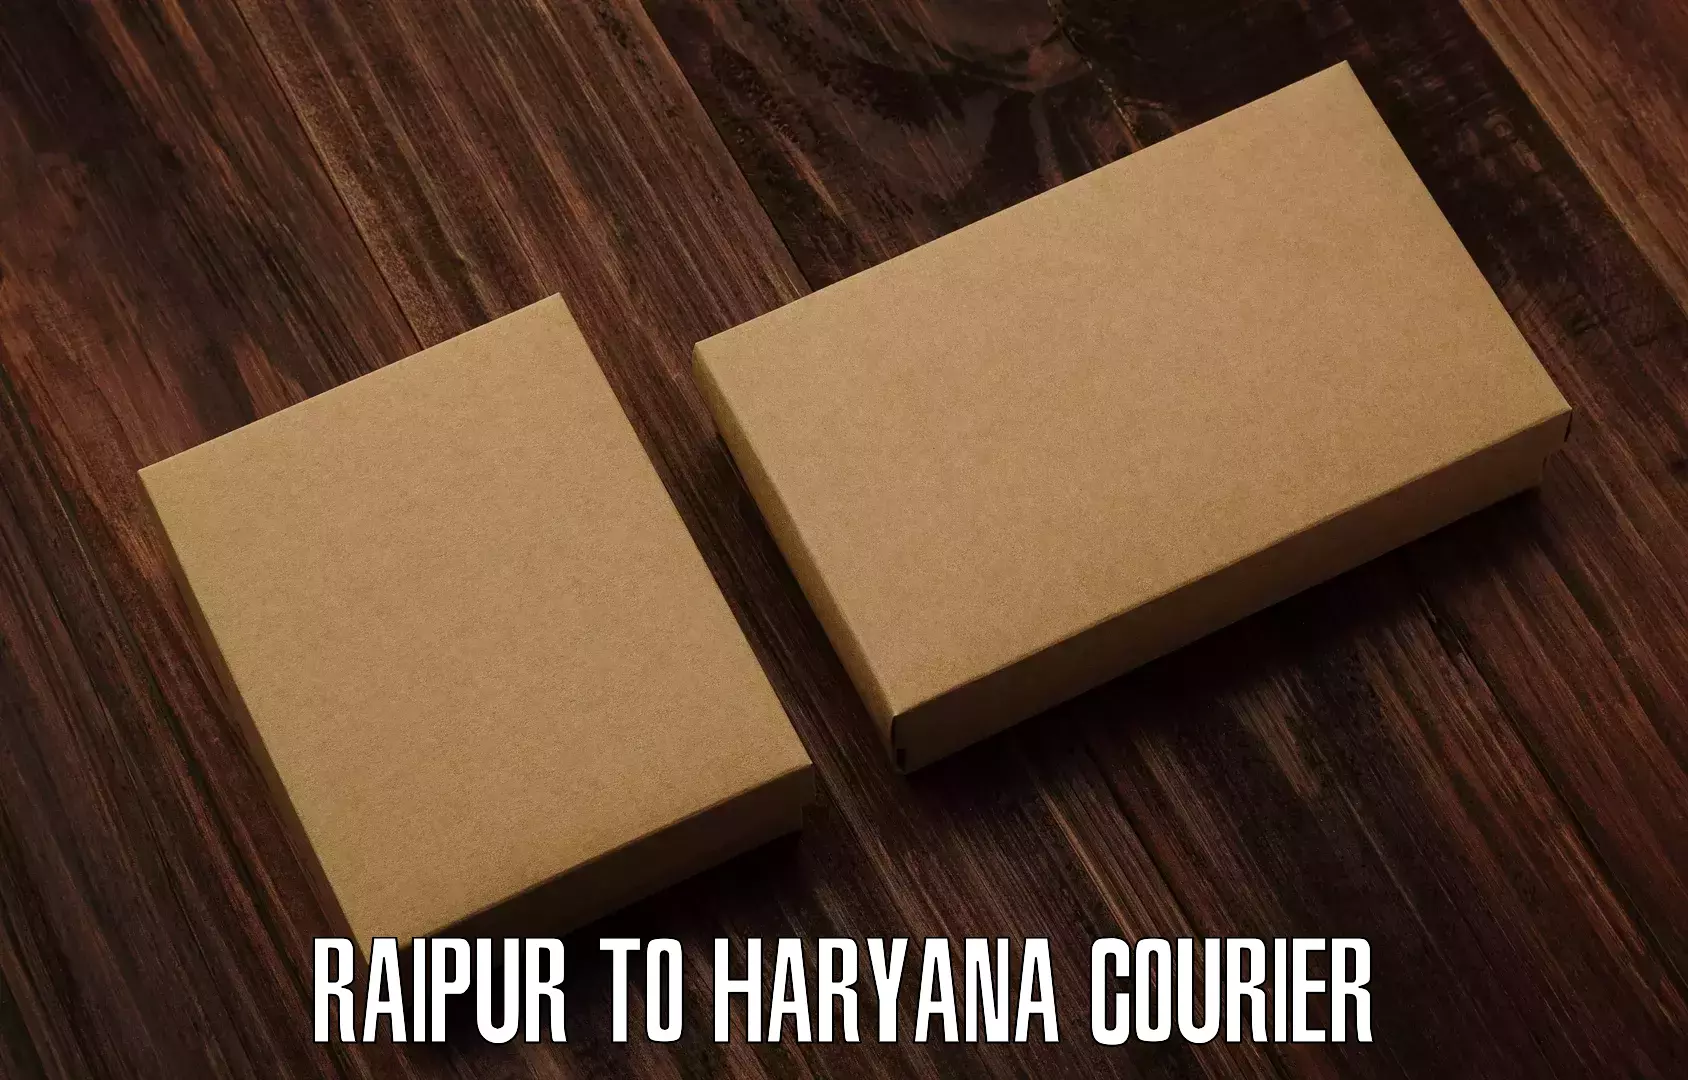 Regular parcel service Raipur to Bahadurgarh